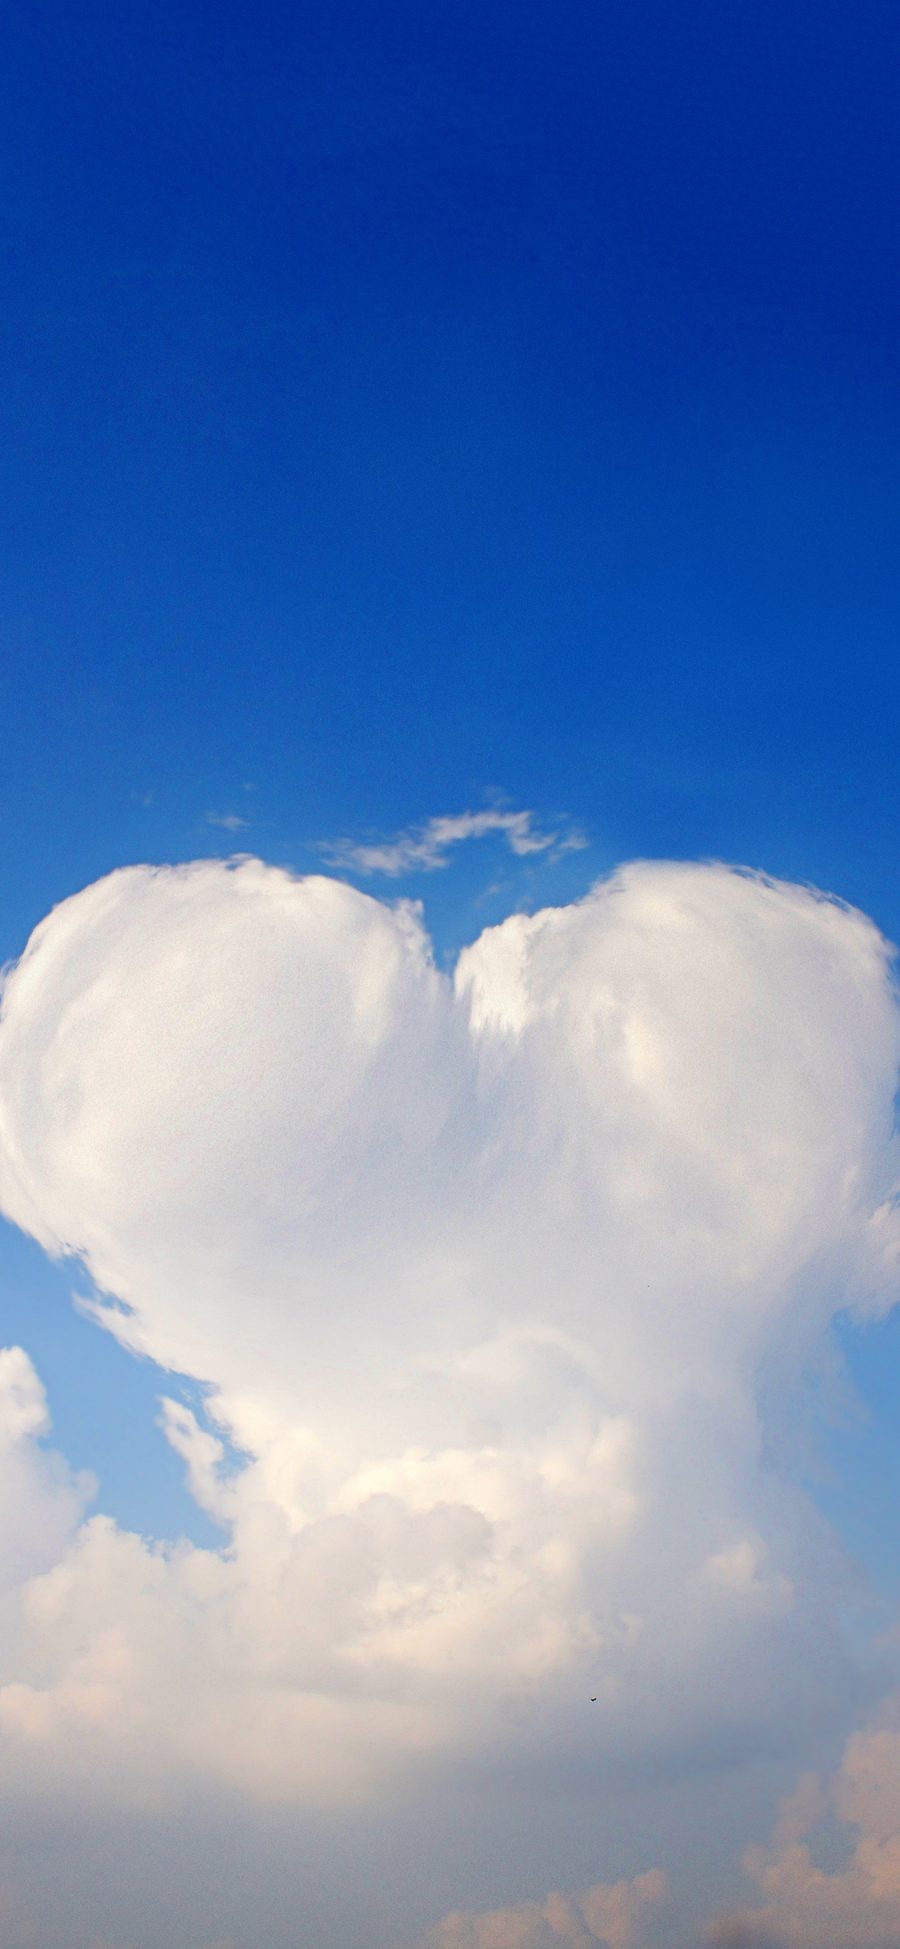 [2436×1125]天空 蓝天白云 心形 爱心 浪漫 苹果手机壁纸图片